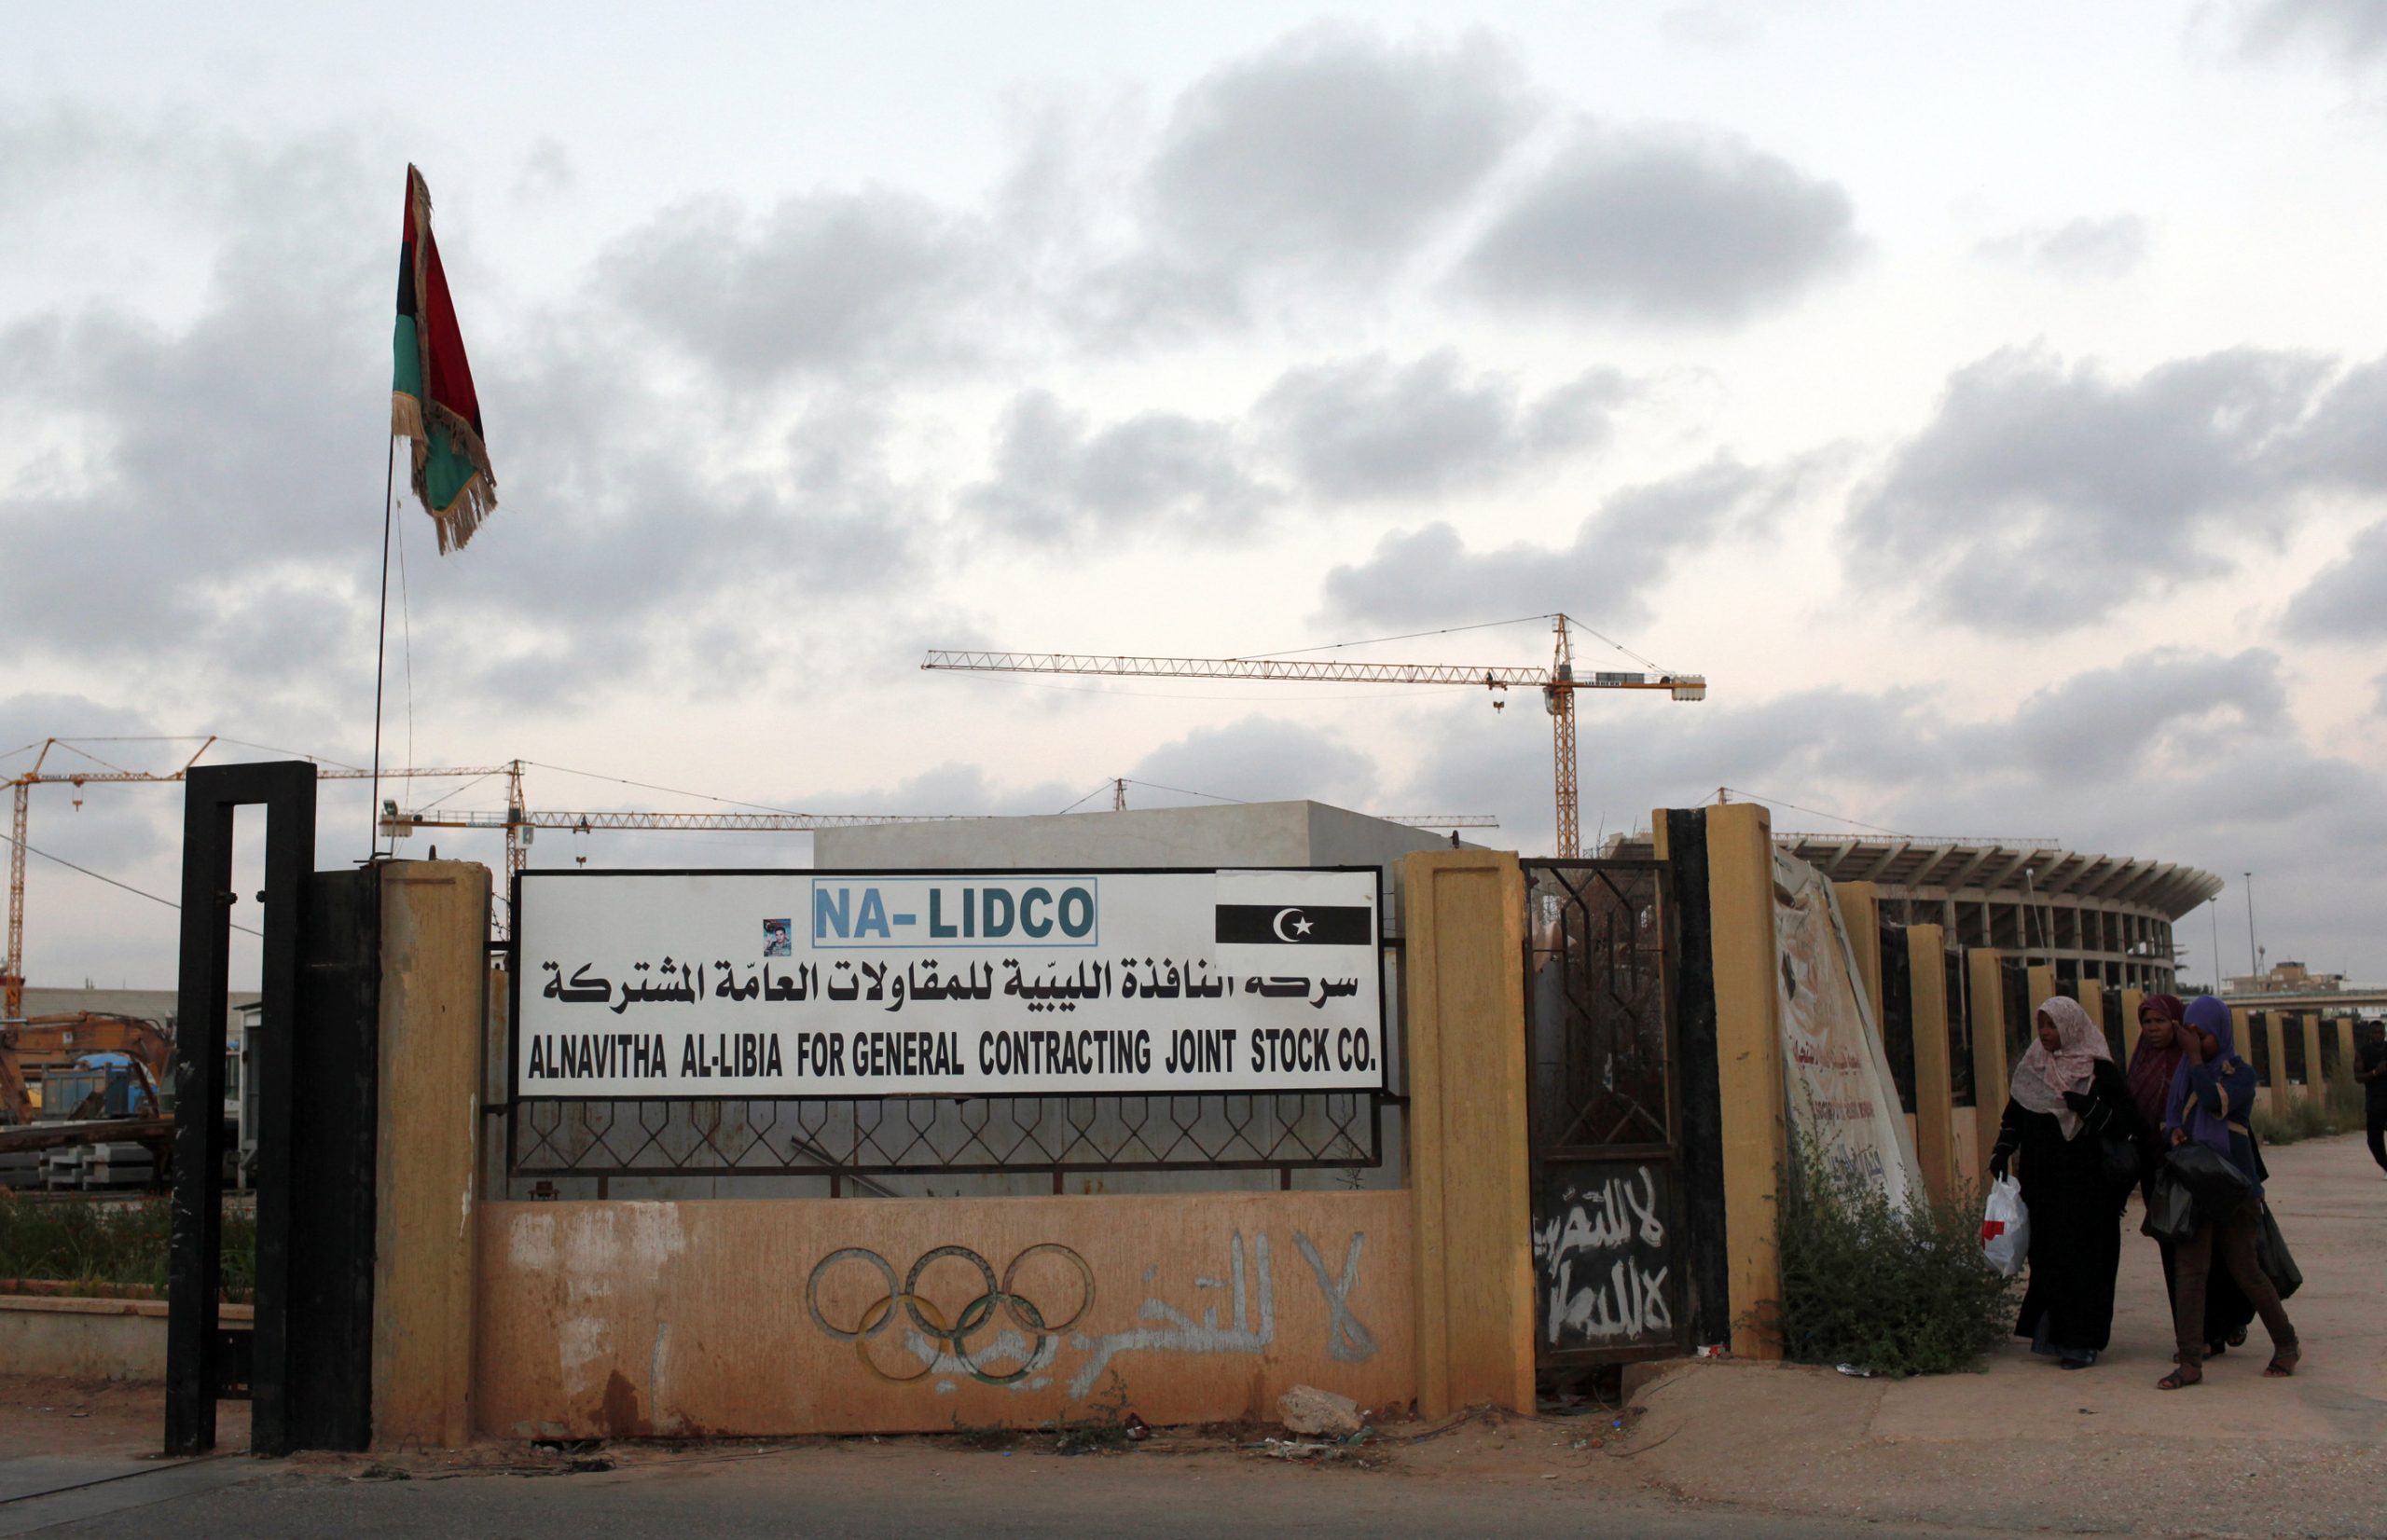 Λιβύη : Τουρκικές επενδύσεις σε ενέργεια, κατασκευές και υγεία